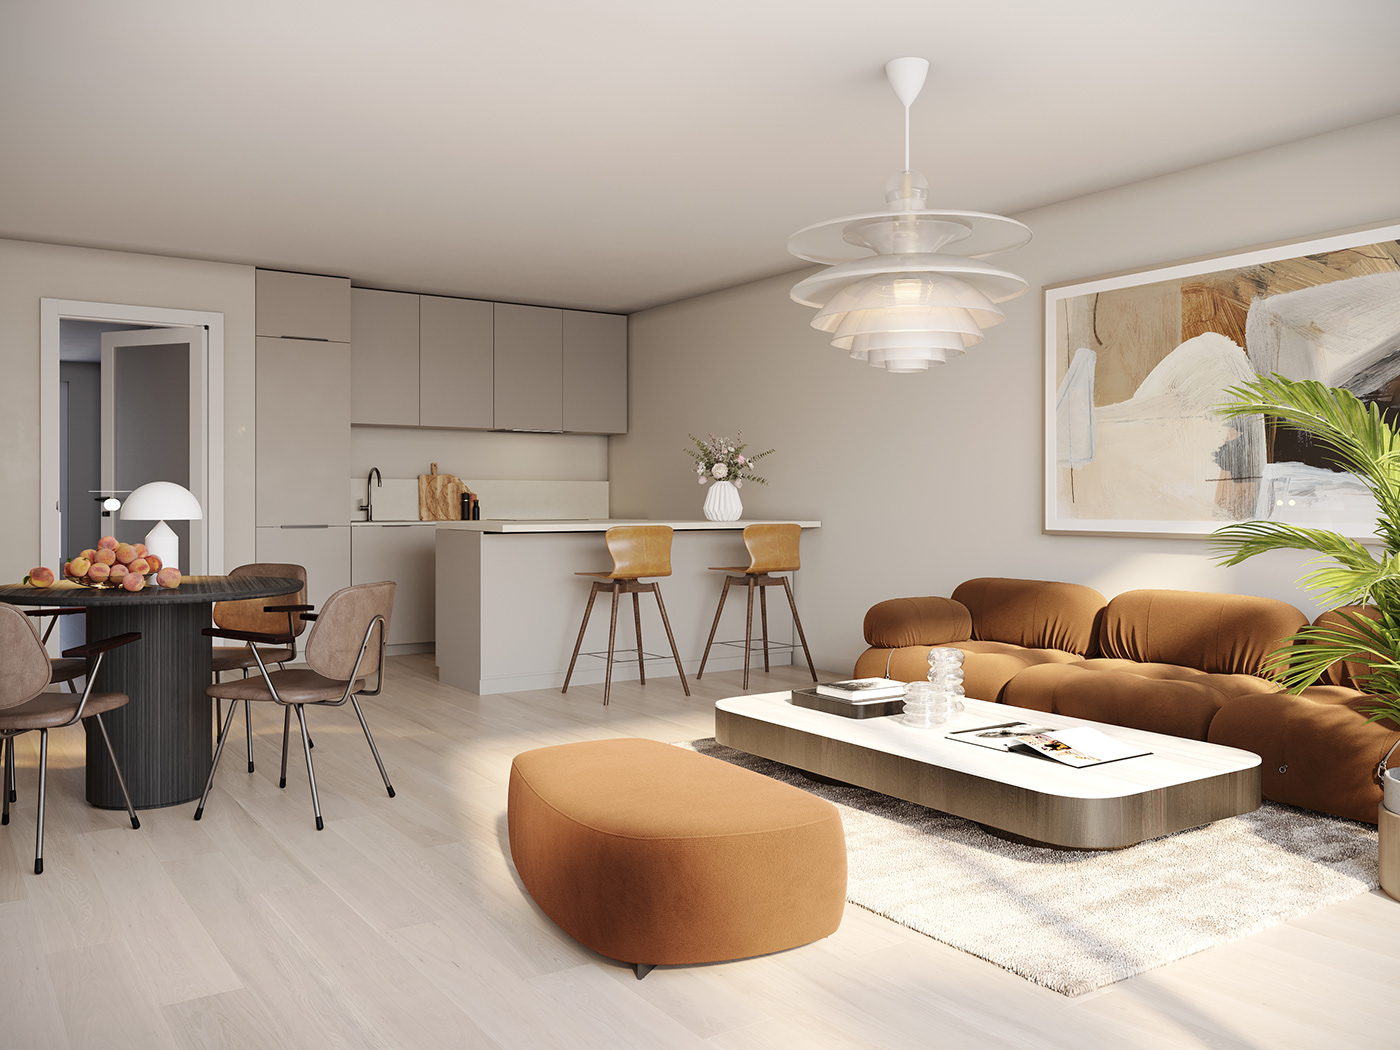 livingroom cozy warm colors luxury